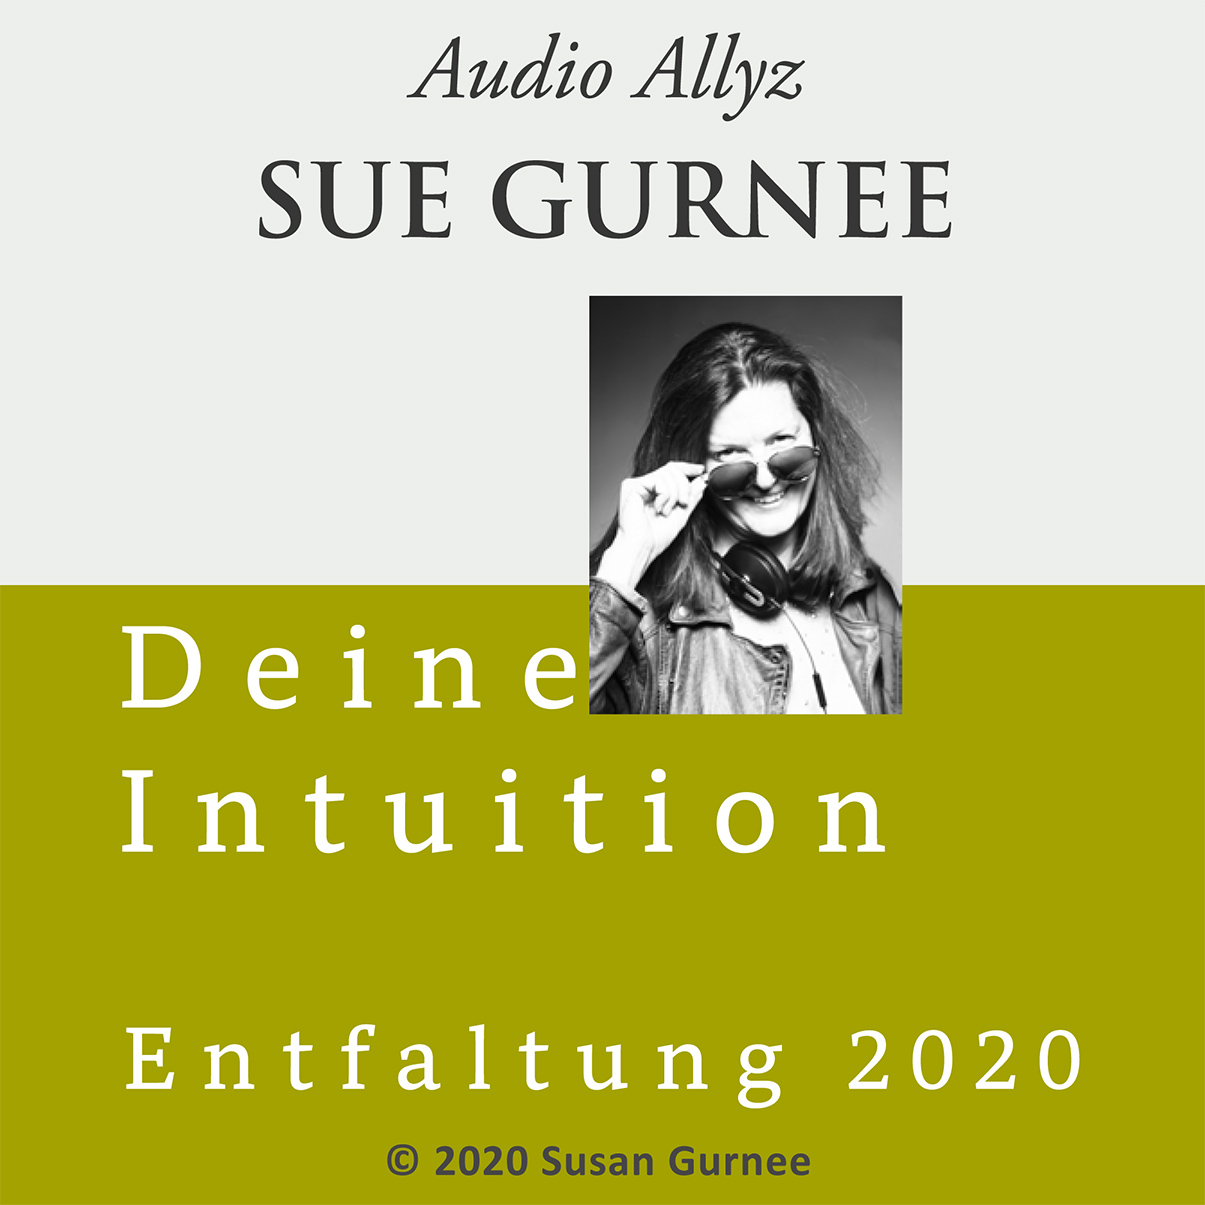 Audio Allyz Sue Gurnee - Entfaltung 2020 - Deine Intuition